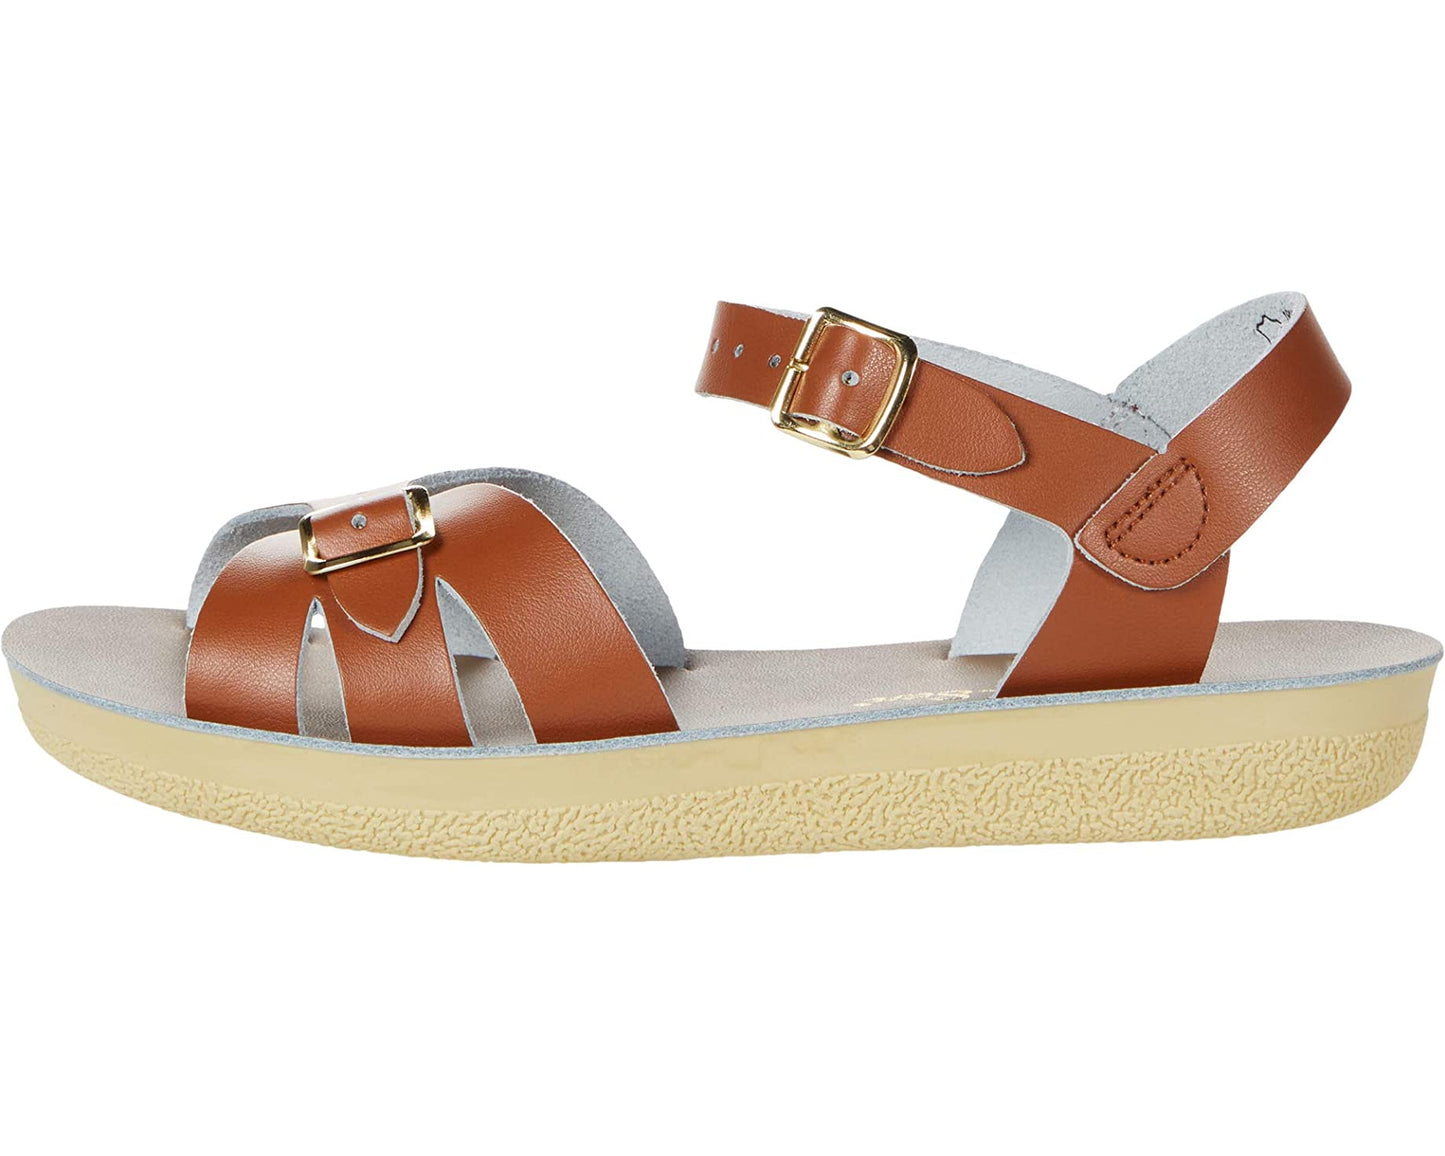 Boardwalk Adult Tan Sandals